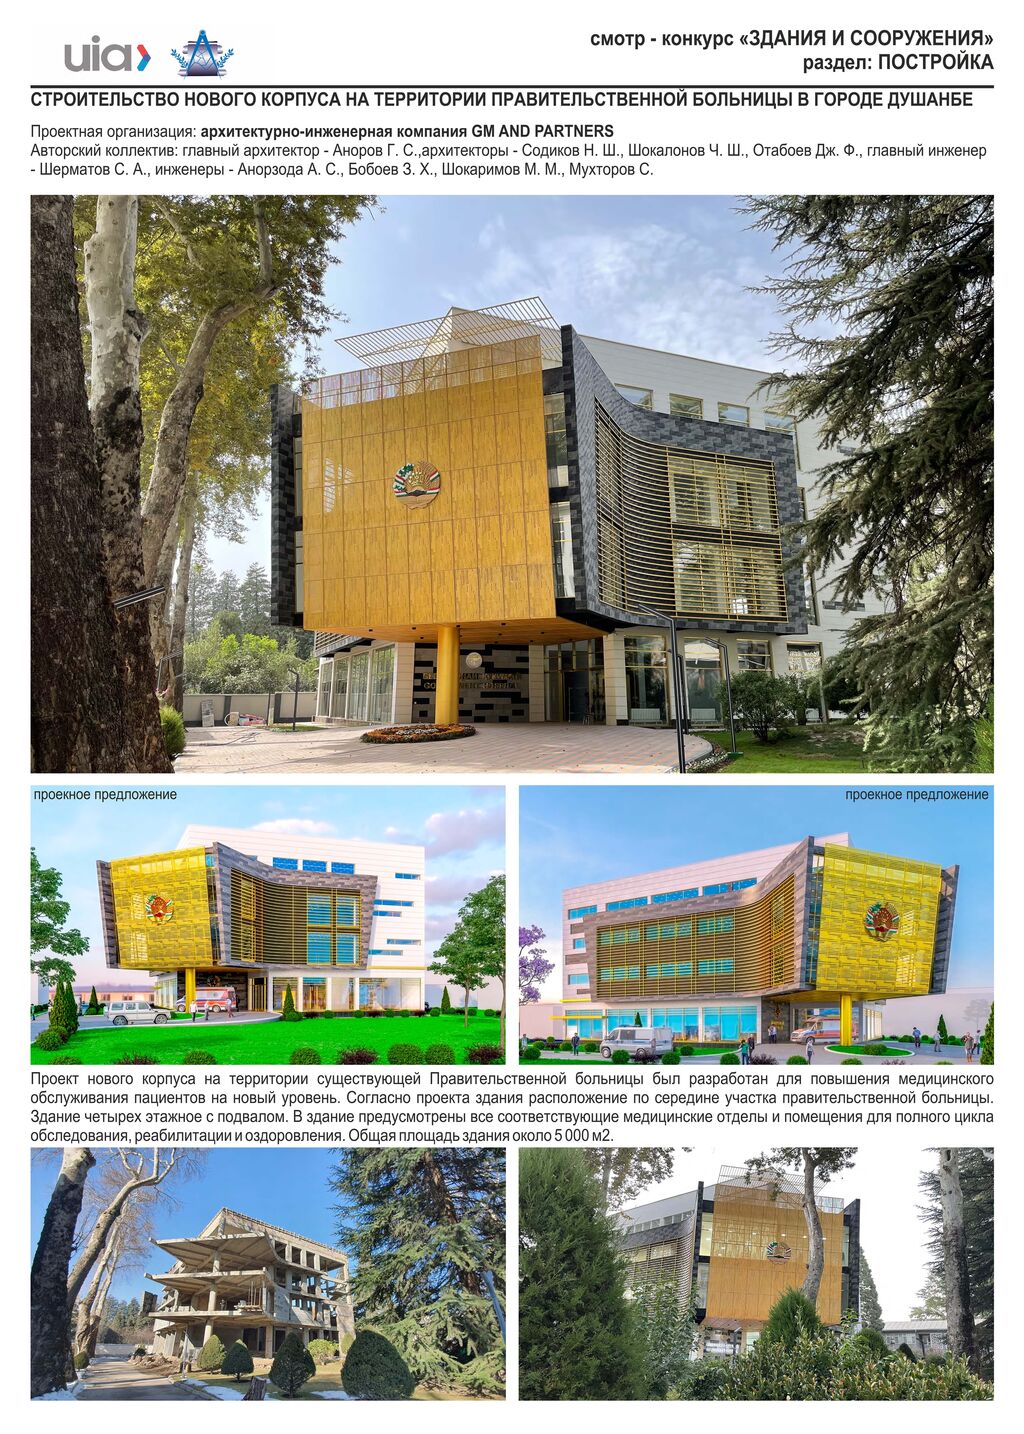 43.Строительство нового корпуса на территории правительственной больницы в г.Душанбе, Таджикистан